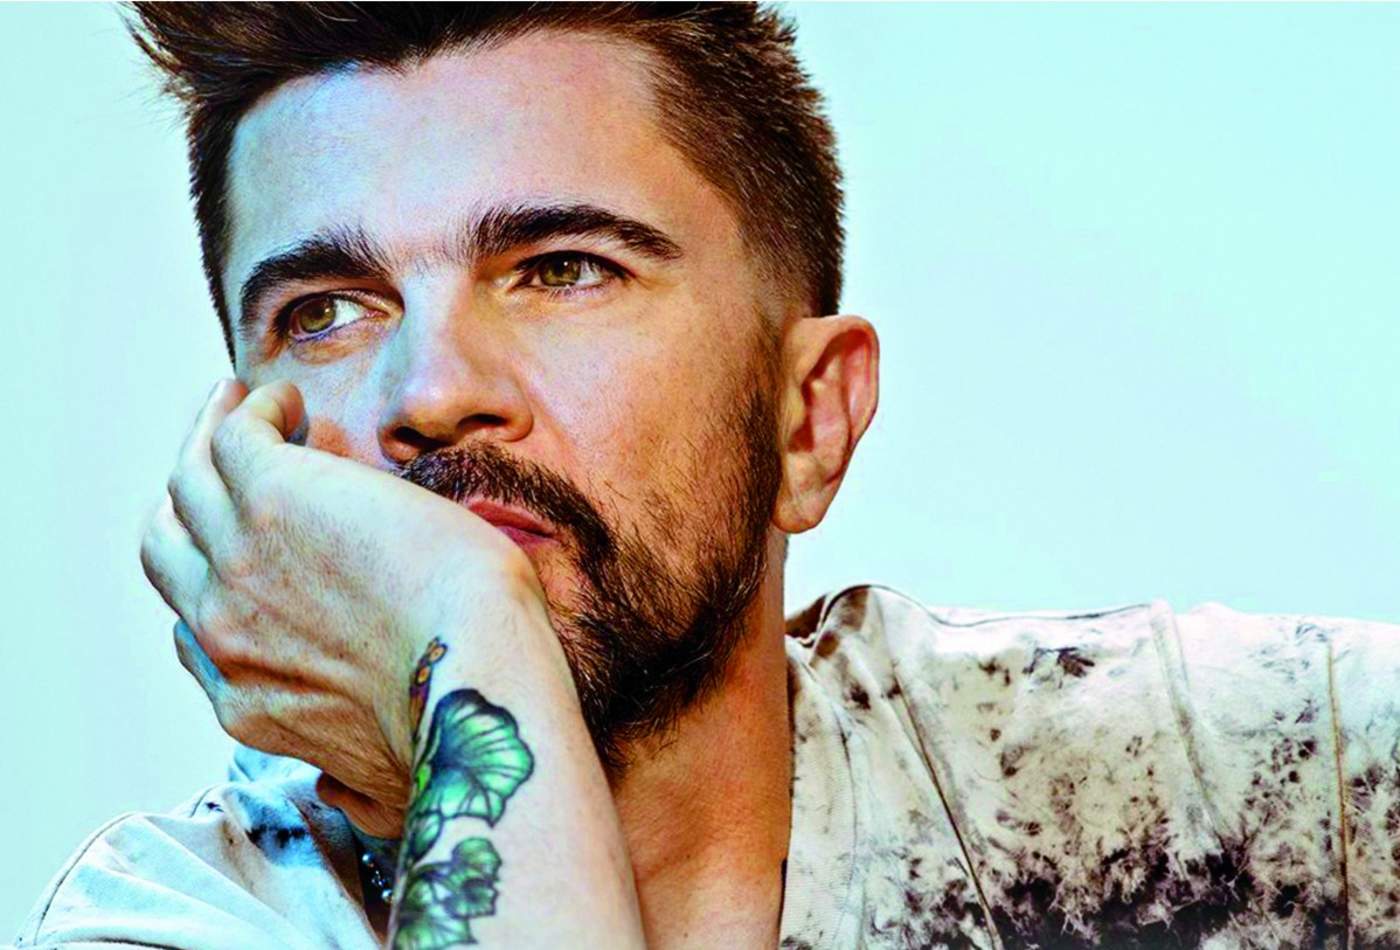 El amor mueve a Juanes